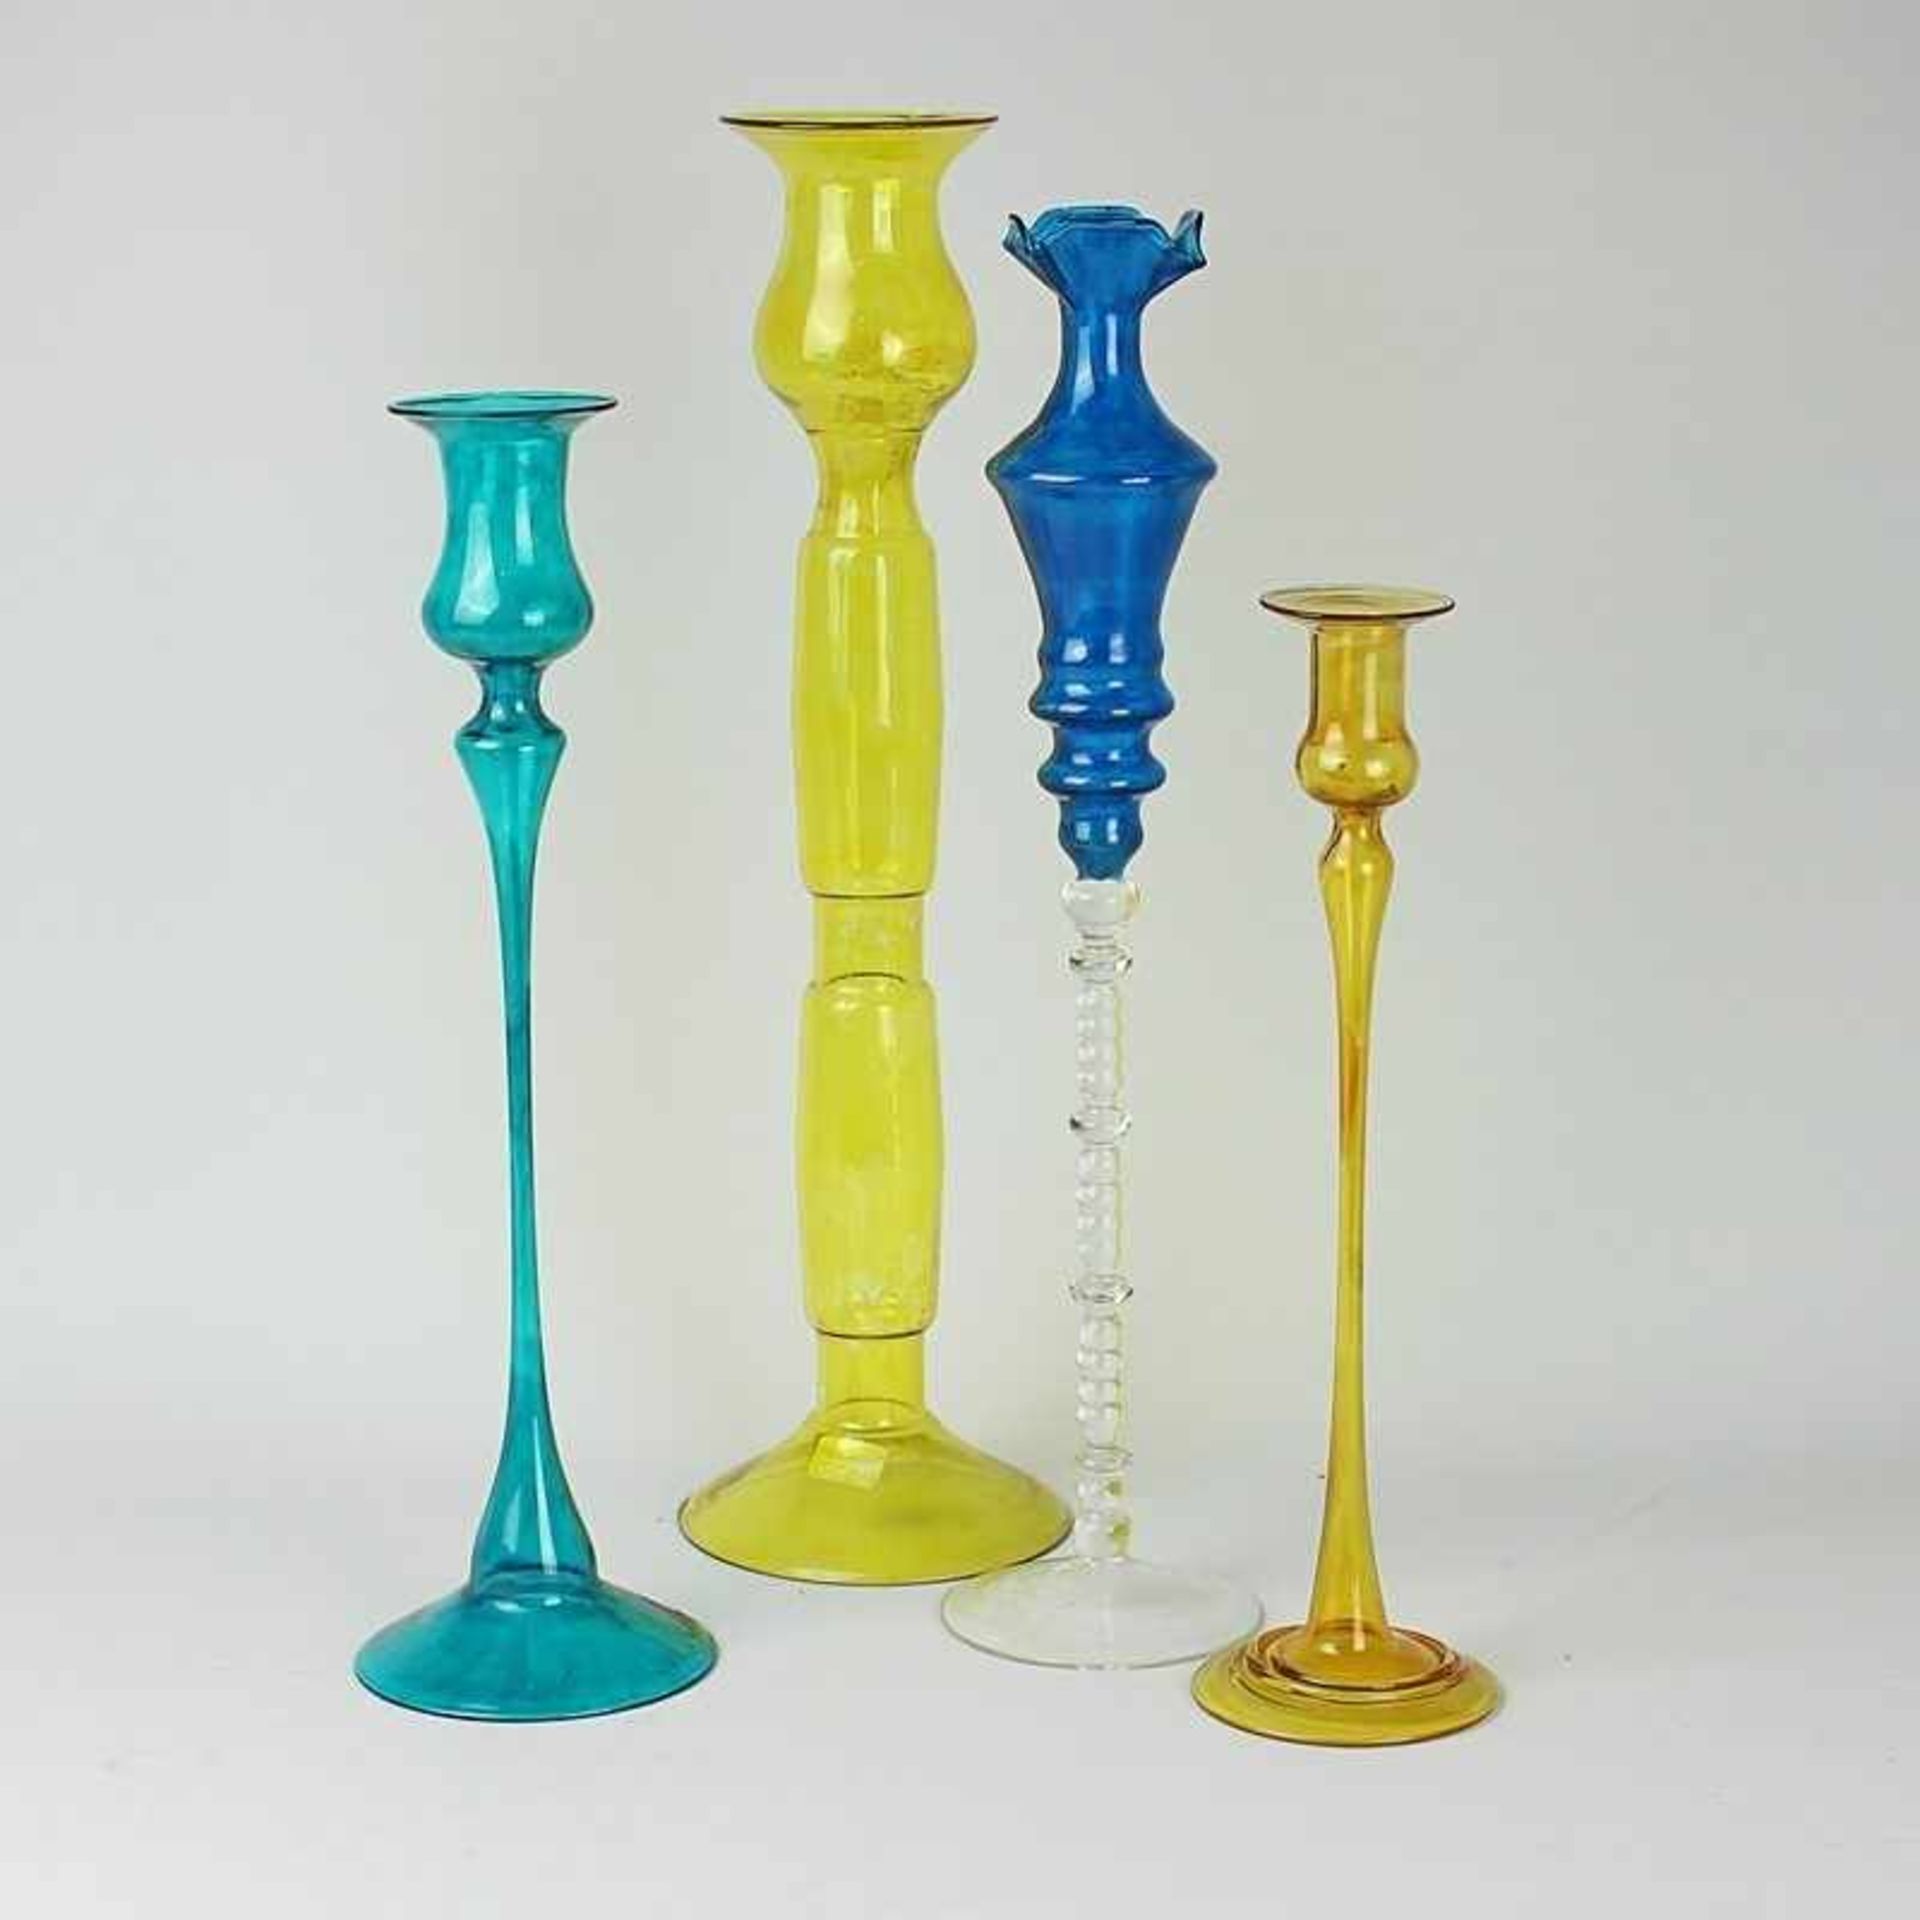 Konvolut - Kerzenständer 4 St., untersch. Formen u. Größen, farbloses, blaues u. gelbes Glas, runder